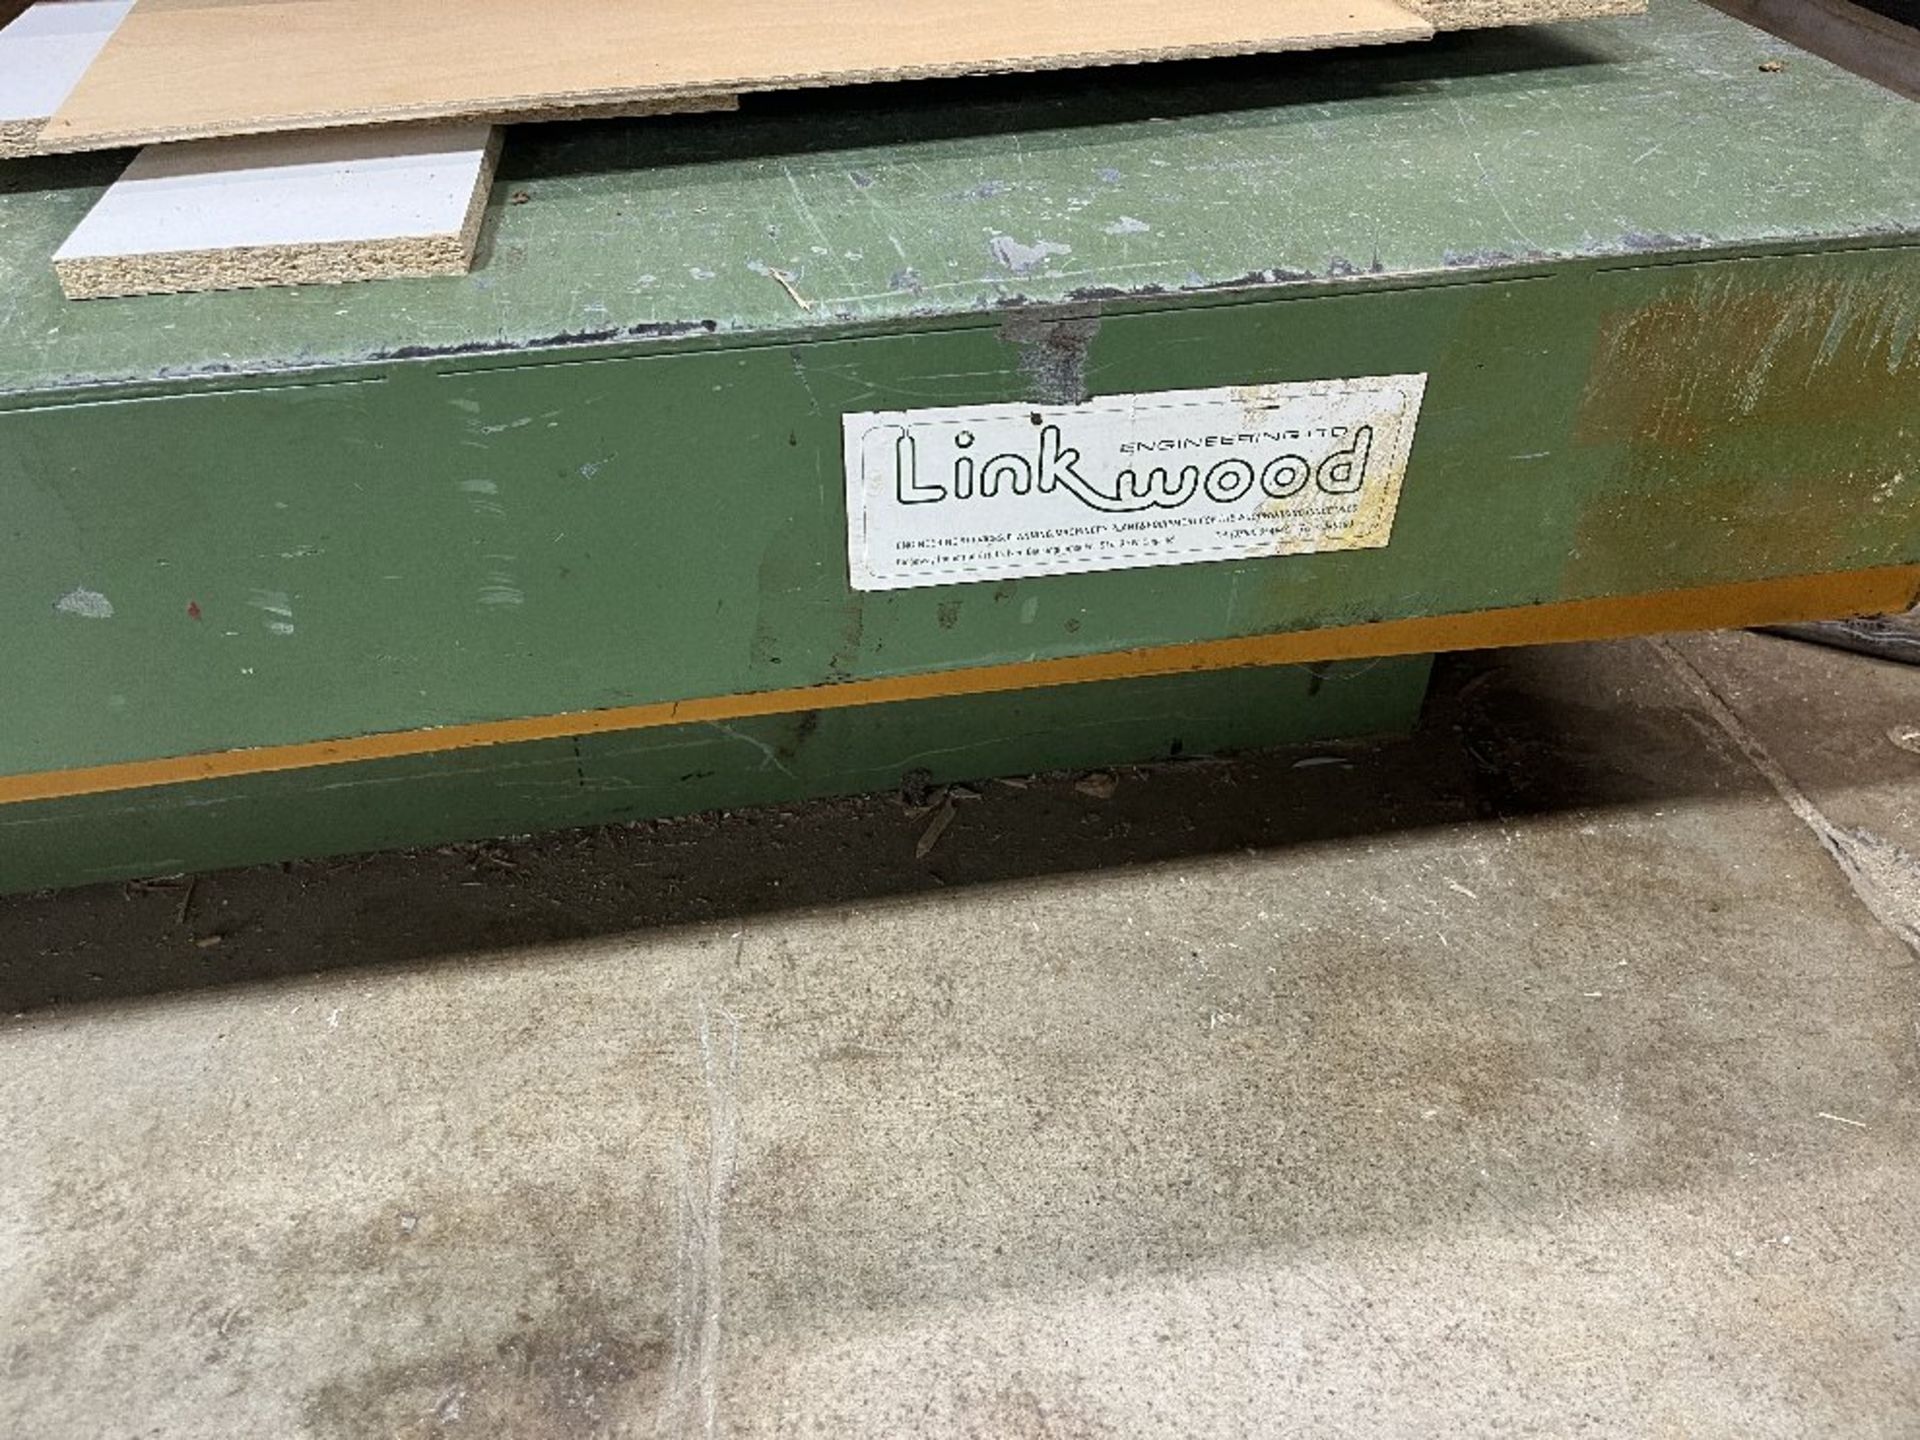 Linkwood 5' x 12' Metal Hydraulic Lift Table - Image 3 of 3